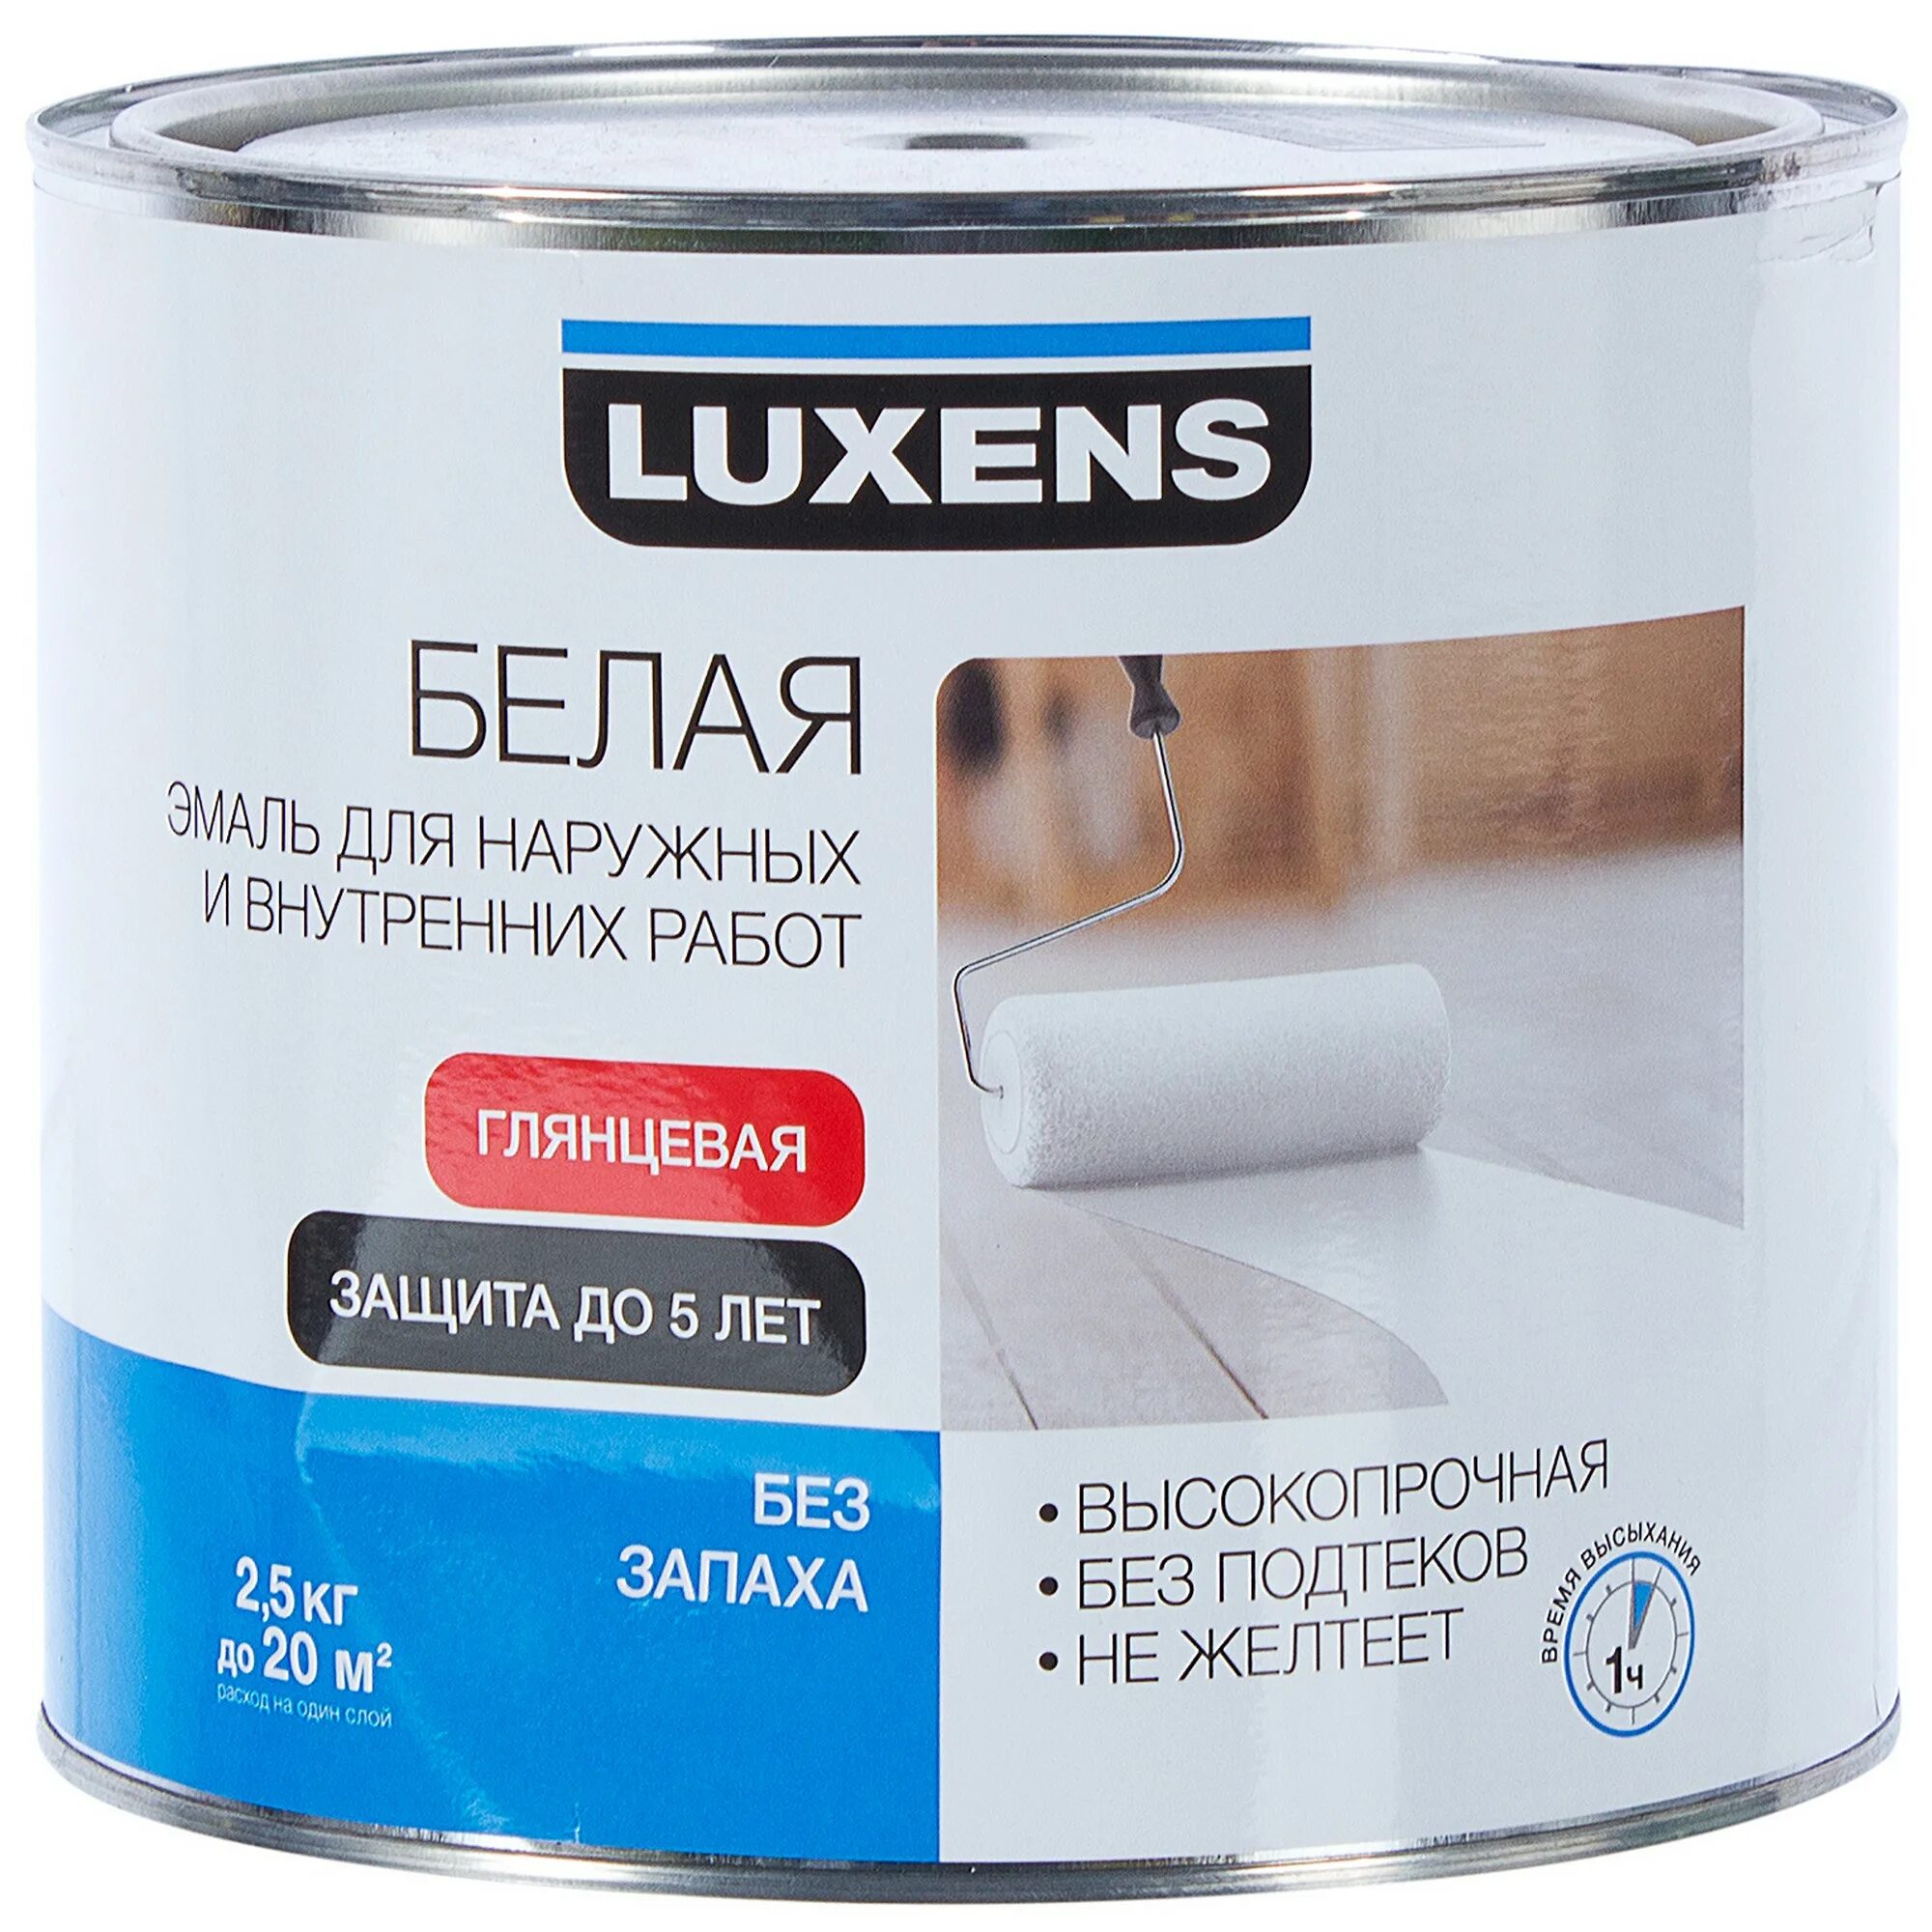 Глянцевая краска без запаха. Эмаль Luxens глянцевая цвет белый 2.5 кг. Эмаль универсальная Luxens 2.5 кг нежно-голубой. Эмаль акриловая Luxens глянцевая белая универсальная 2.5 кг. Luxens эмаль.